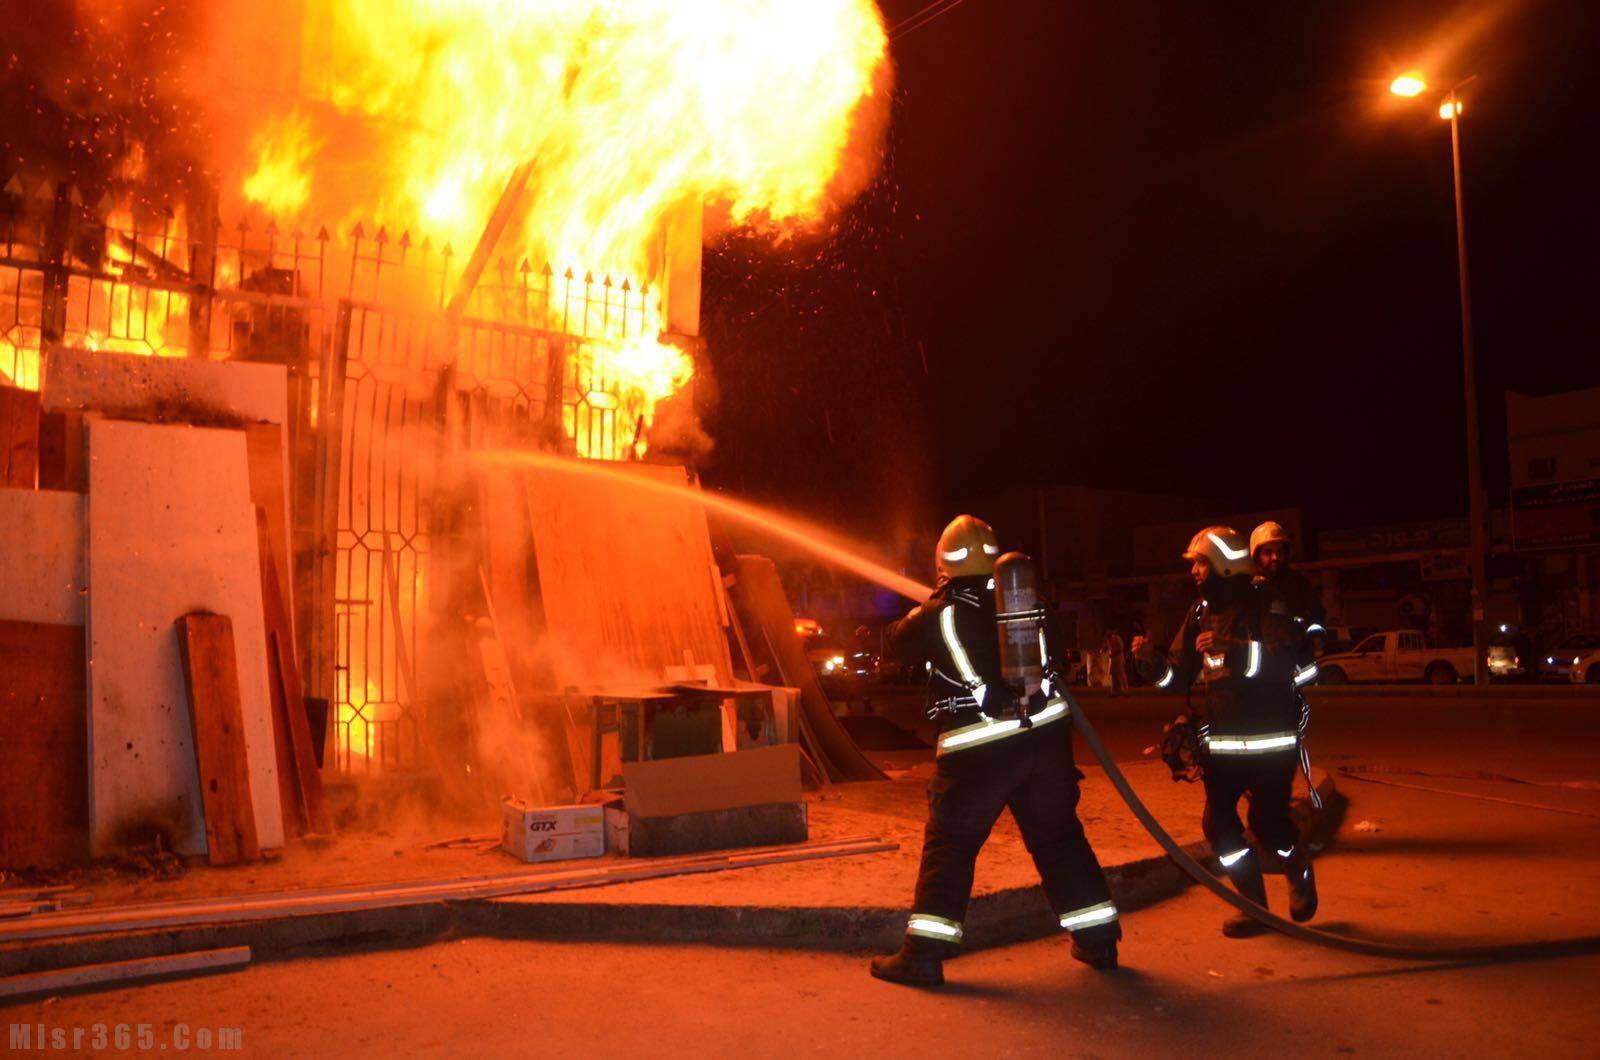   الحماية المدنية تسيطر على حريق بمصنع كارتون في العاشر من رمضان